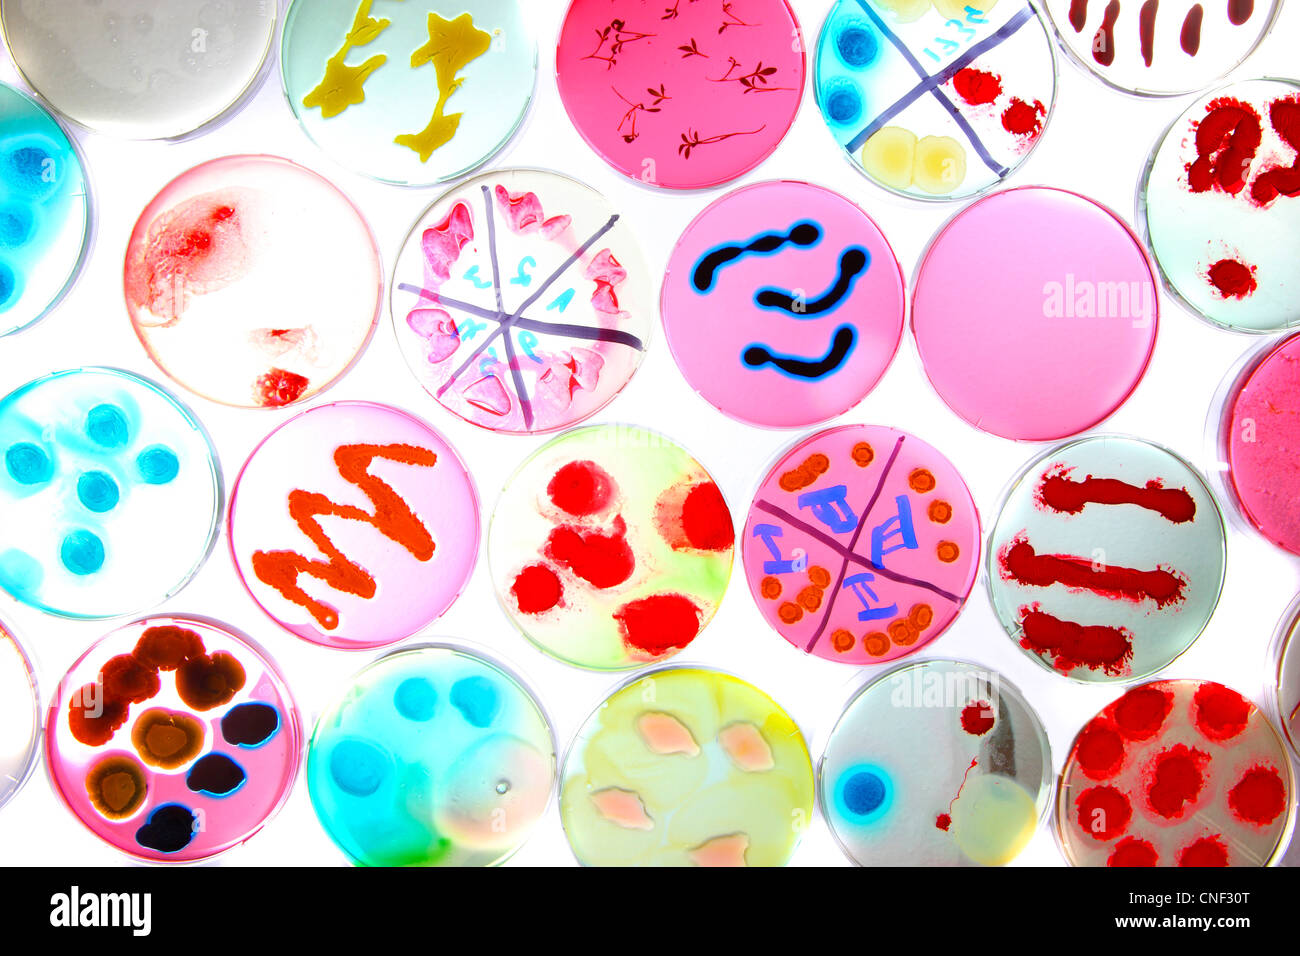 Laboratory, biologique, chimique. L'analyse des cultures de bactéries de plus en plus de bactéries dans des boîtes de pétri. Banque D'Images